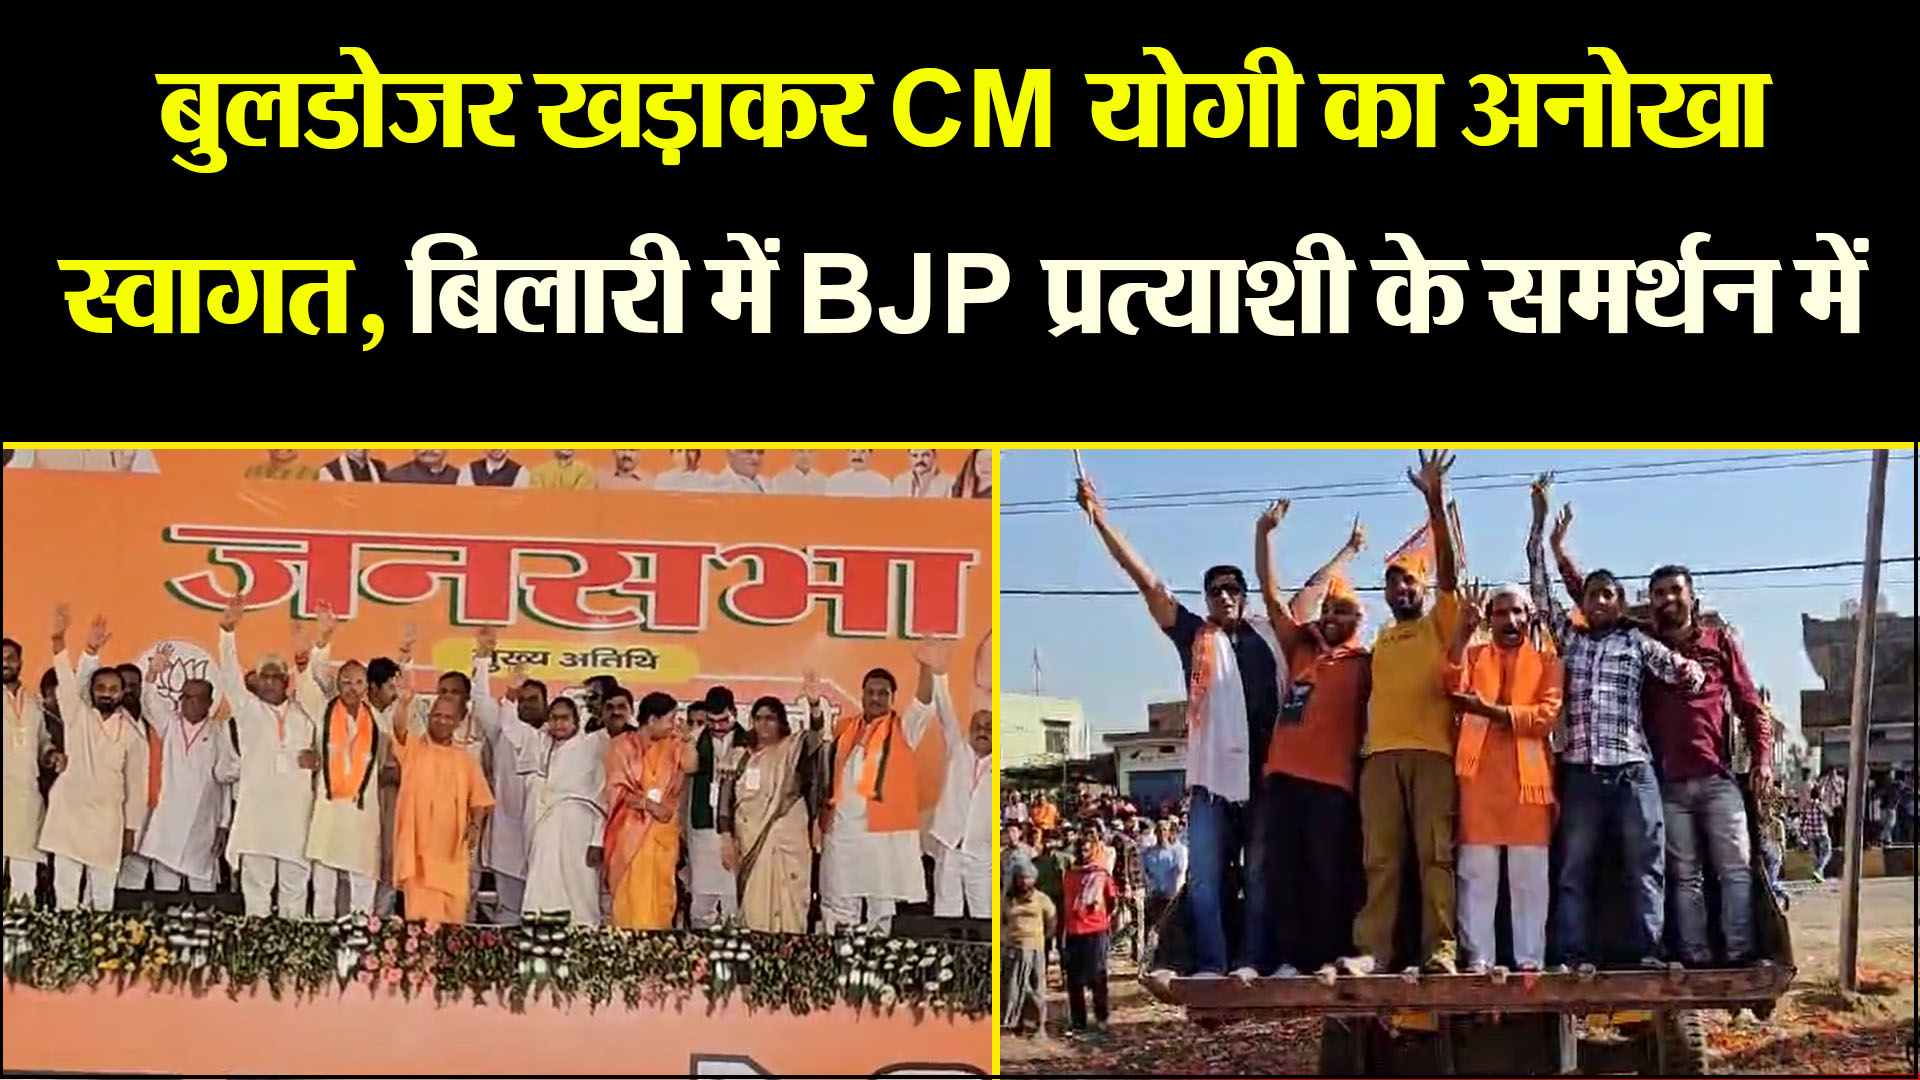 मुरादाबाद: बुलडोजर खड़ाकर CM योगी का अनोखा स्वागत, बिलारी में BJP प्रत्याशी के समर्थन में हुई जनसभा